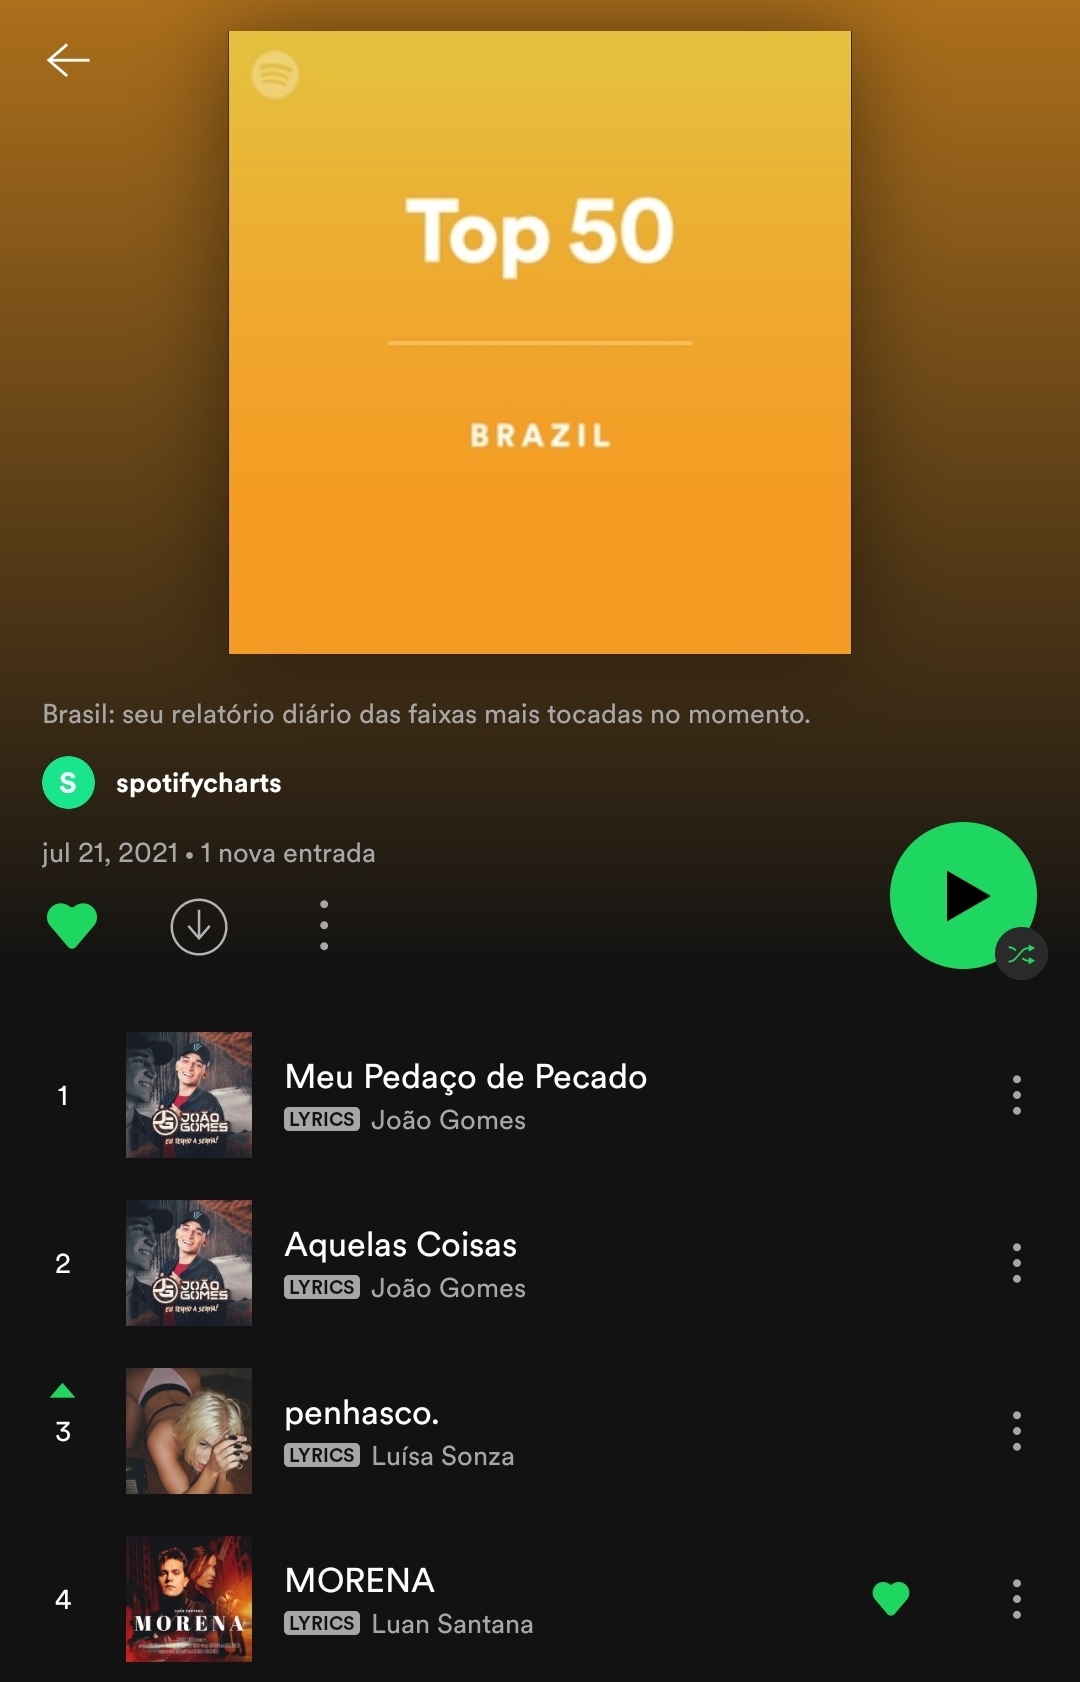 Foto: Divulgação / Spotify